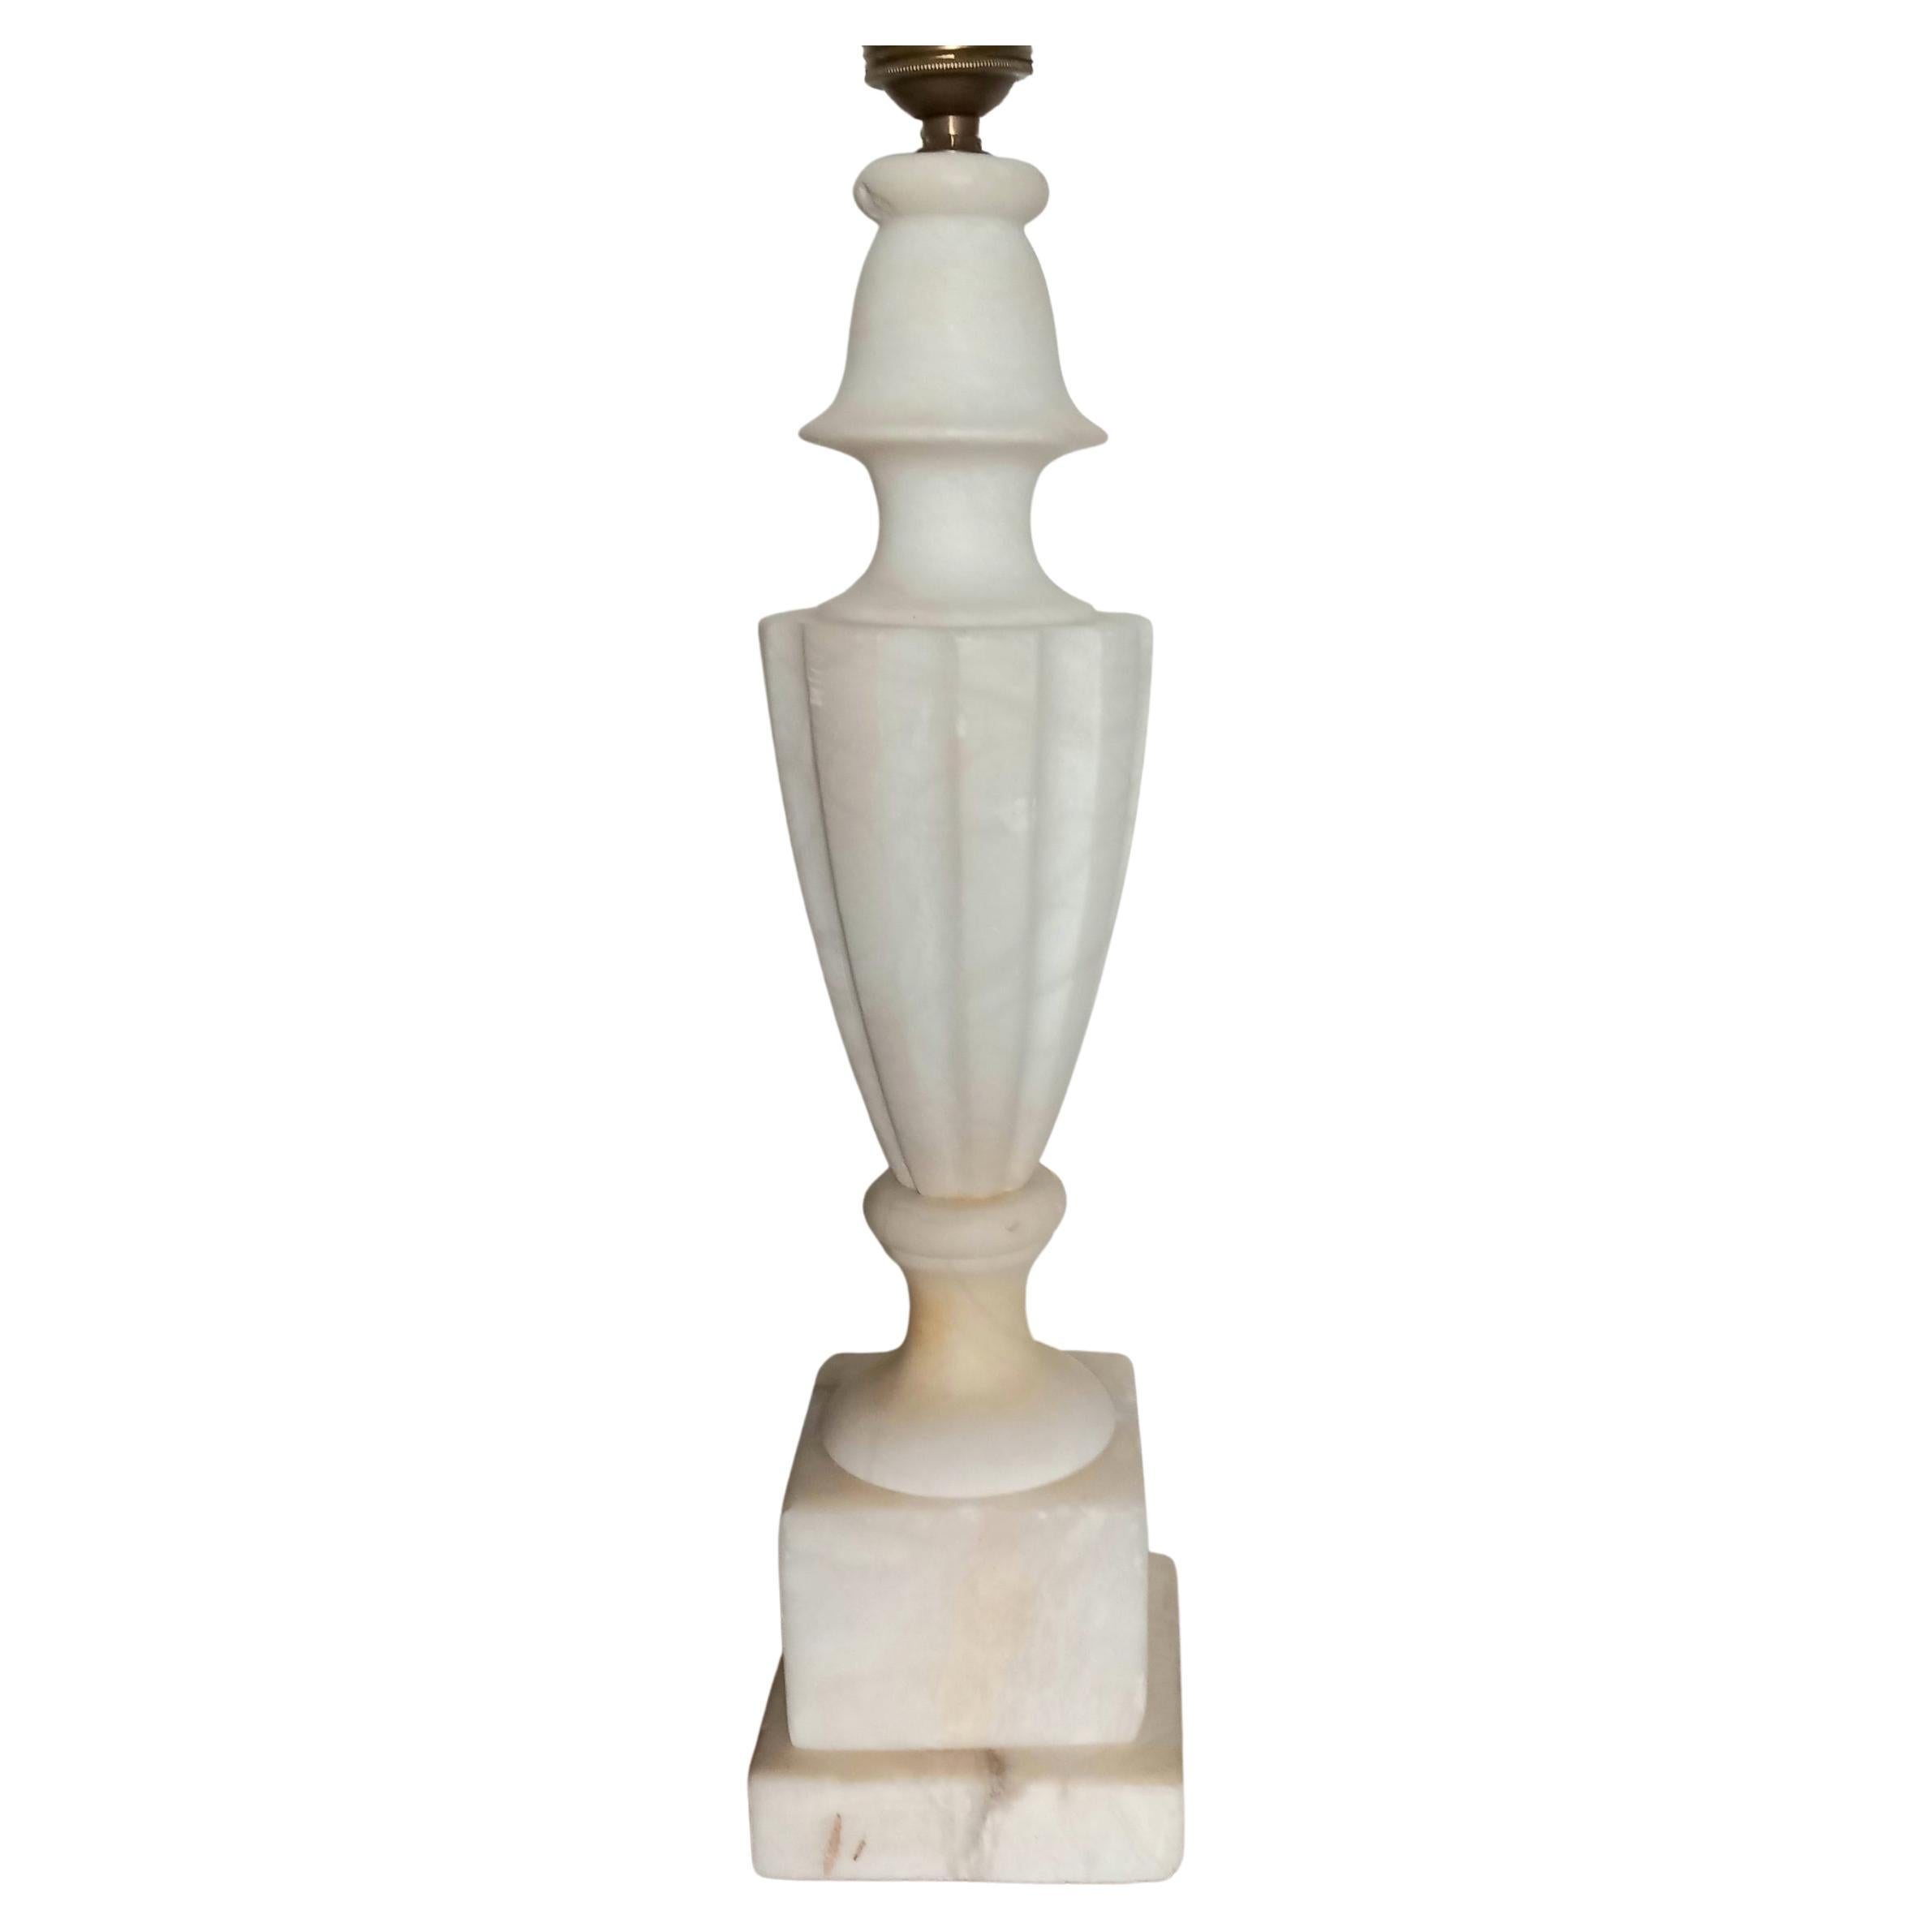 Belle lampe en albâtre blanc ou en marbre statuaire blanc. C'est une lampe solide et lourde,
Belle texture et patine.
Lampe idéale à placer sur une console ou sur un buffet.
Belle lampe. Il s'agit d'une lampe de table en albâtre très solide, de